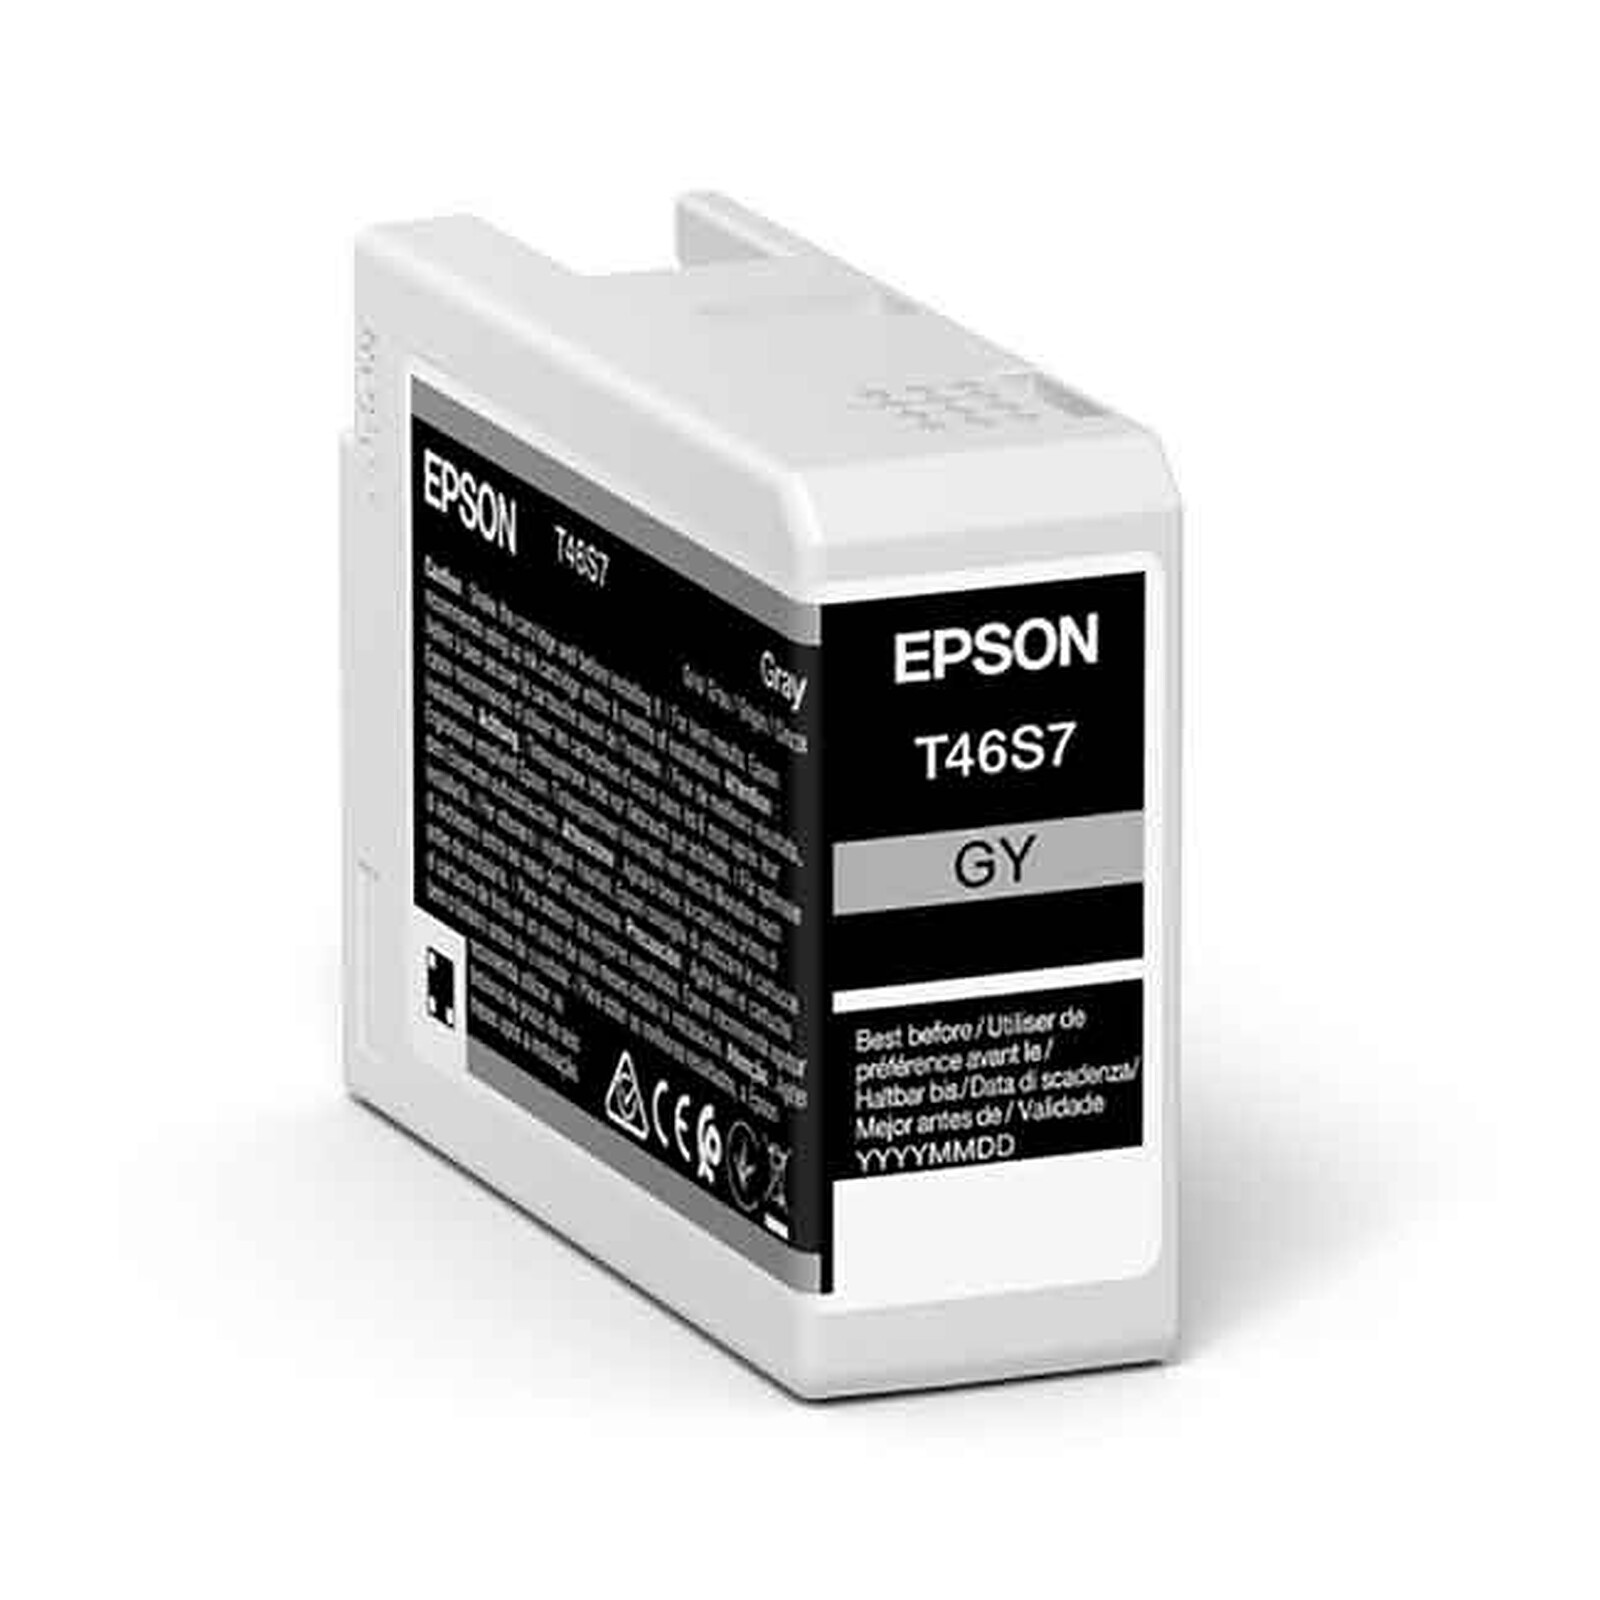 Epson 104 EcoTank Cyan - Cartouche imprimante - LDLC